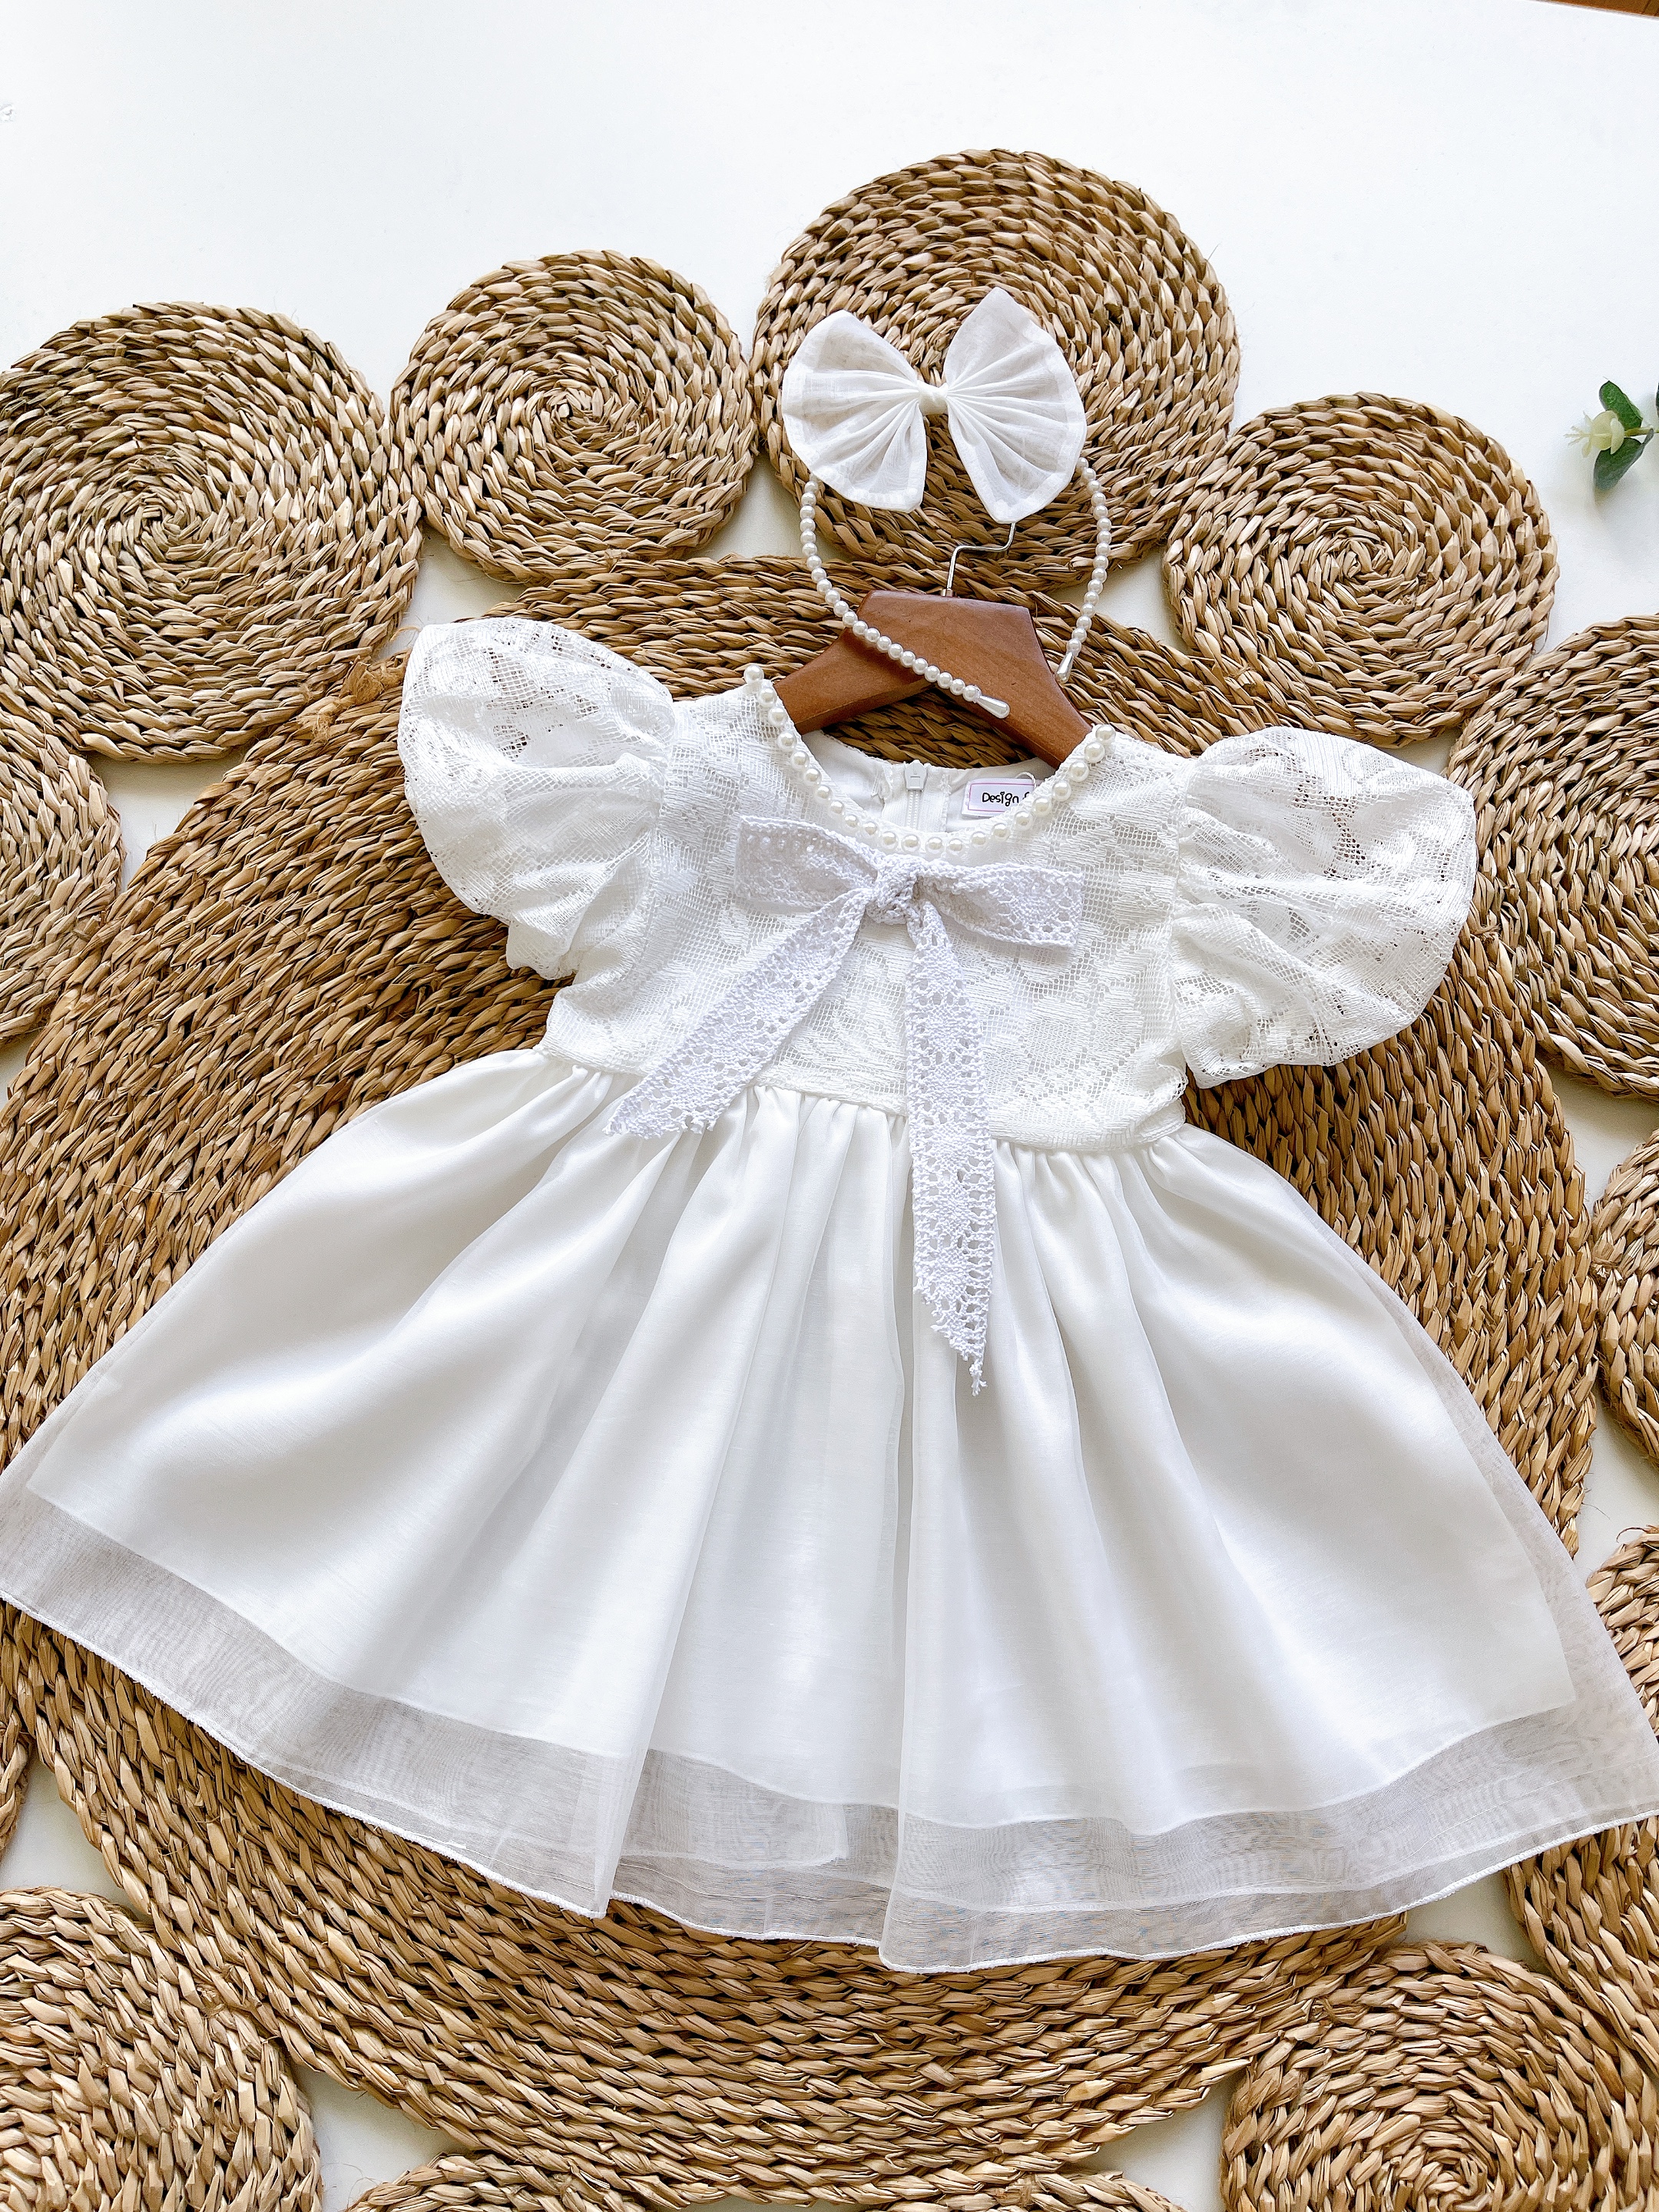 ￼[4-28kg] Váy Trắng Công Chúa Ren Cài NHÍM XÙ KIDS Cho Bé Gái 1 Tuổi Đến 8 Tuổi V080